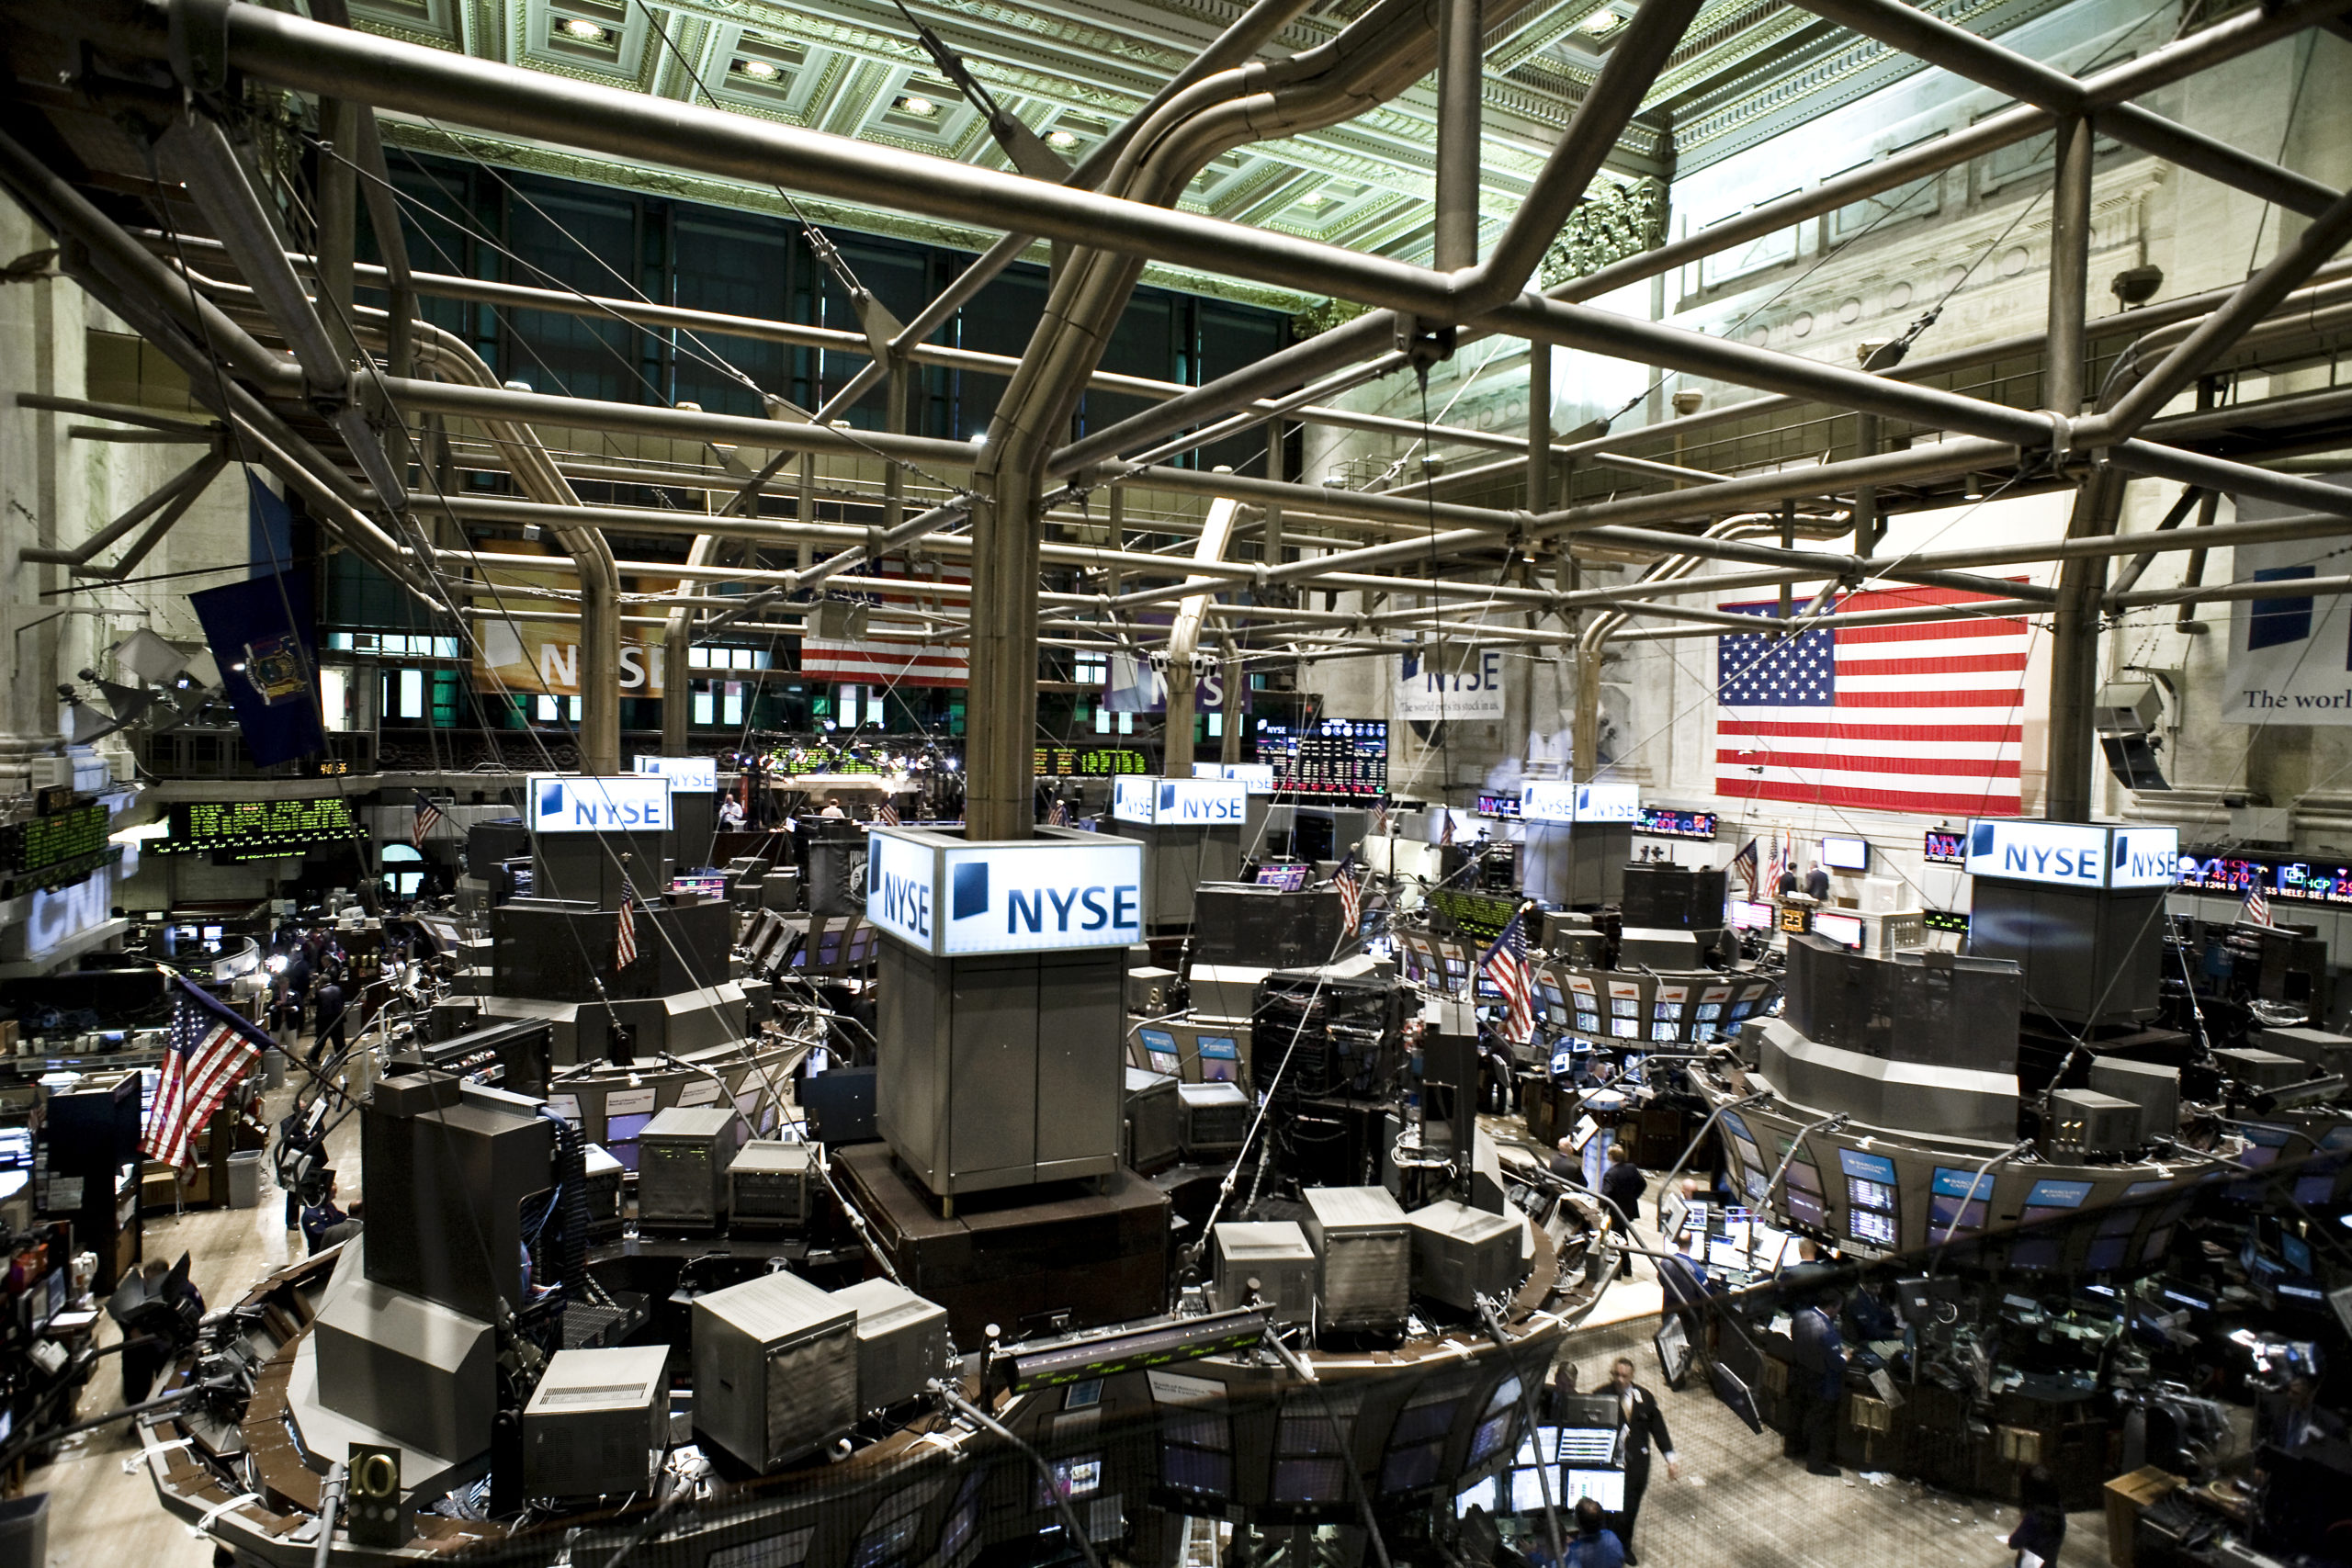 The New York Stock Exchange trading floor